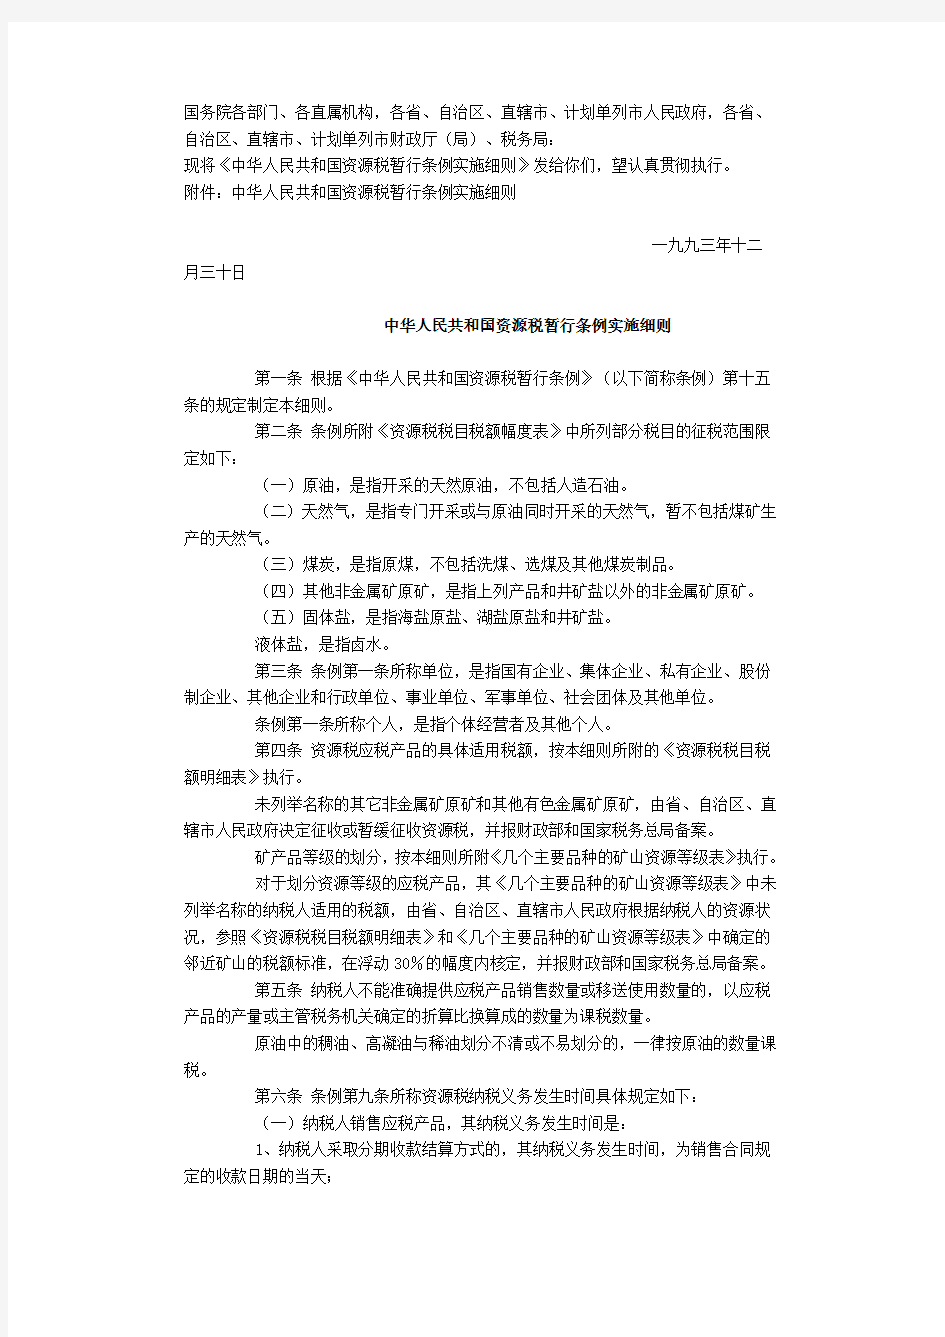 中华人民共和国资源税暂行条例实施细则